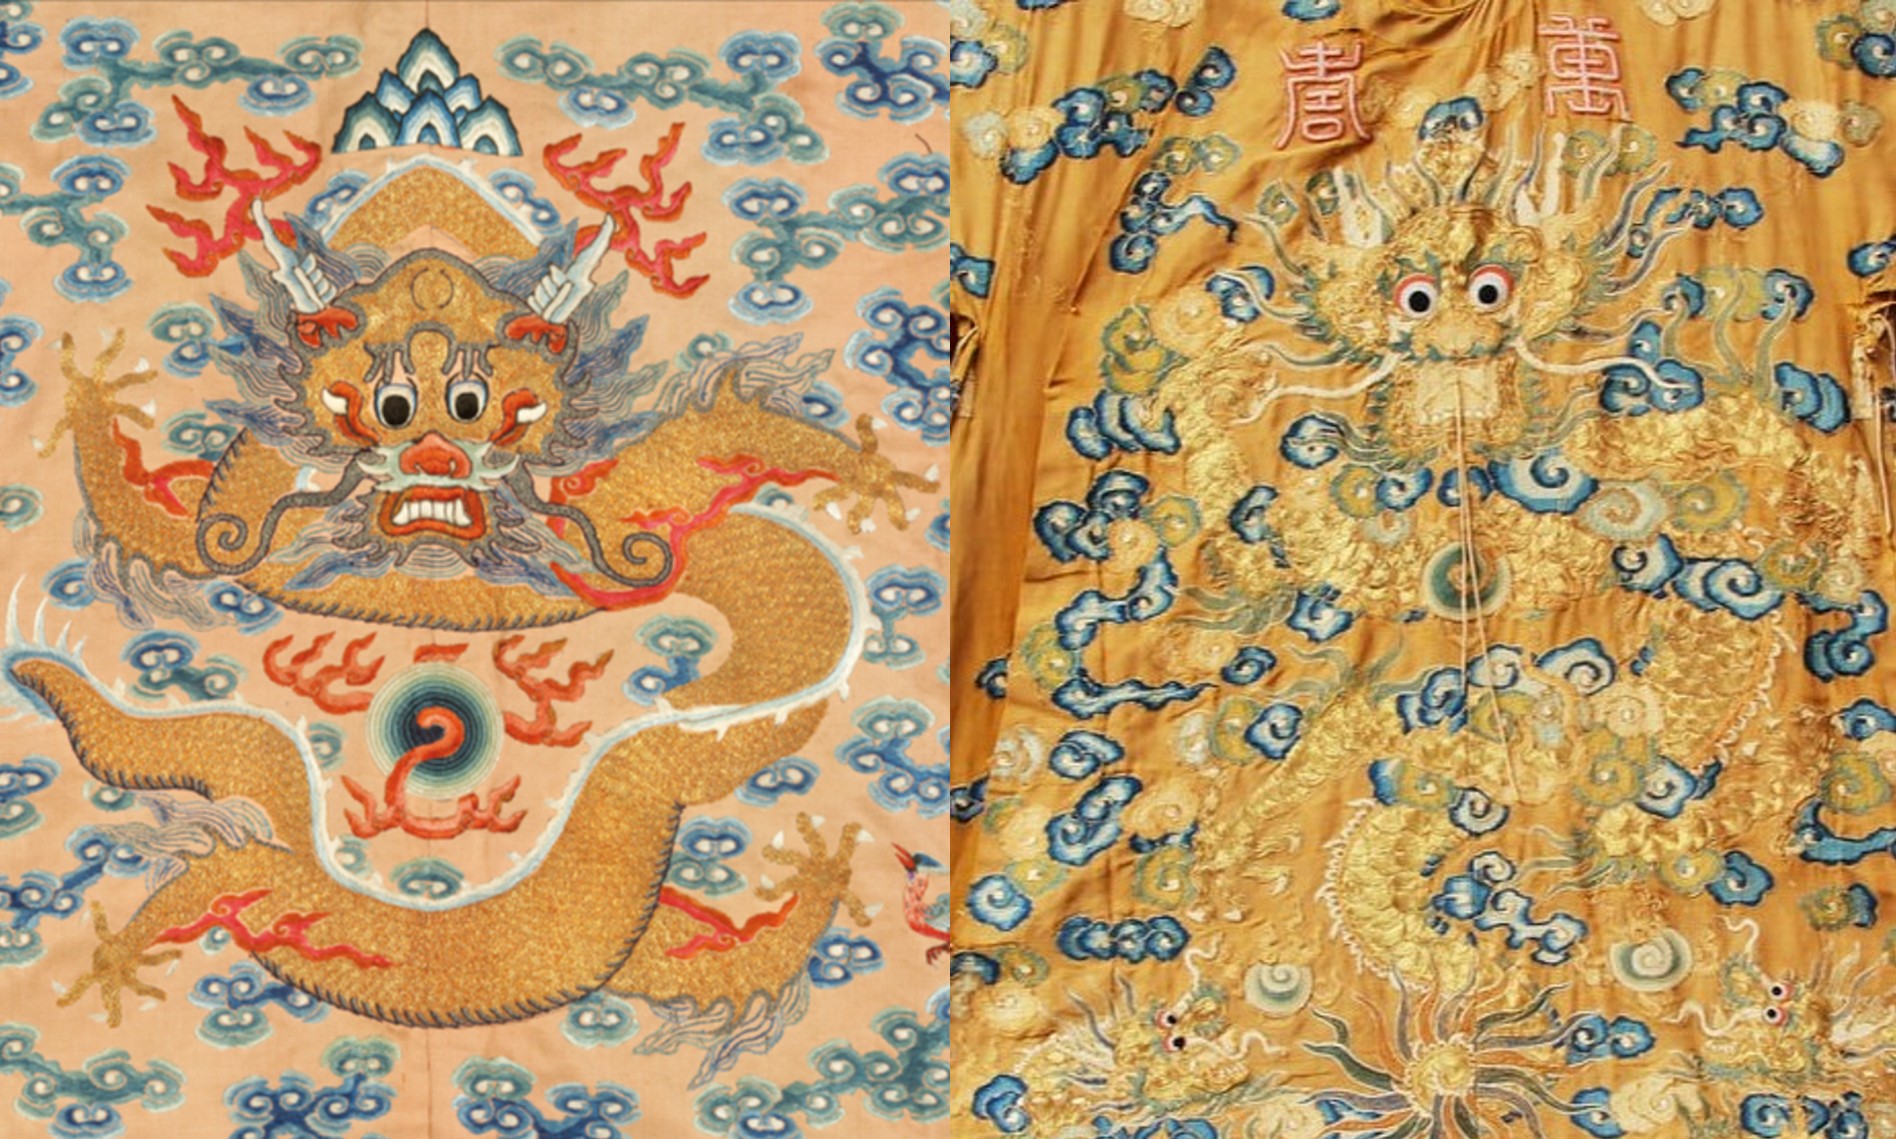 “Con rồng tơ” trong nghệ thuật thêu cổ truyền xứ Việt